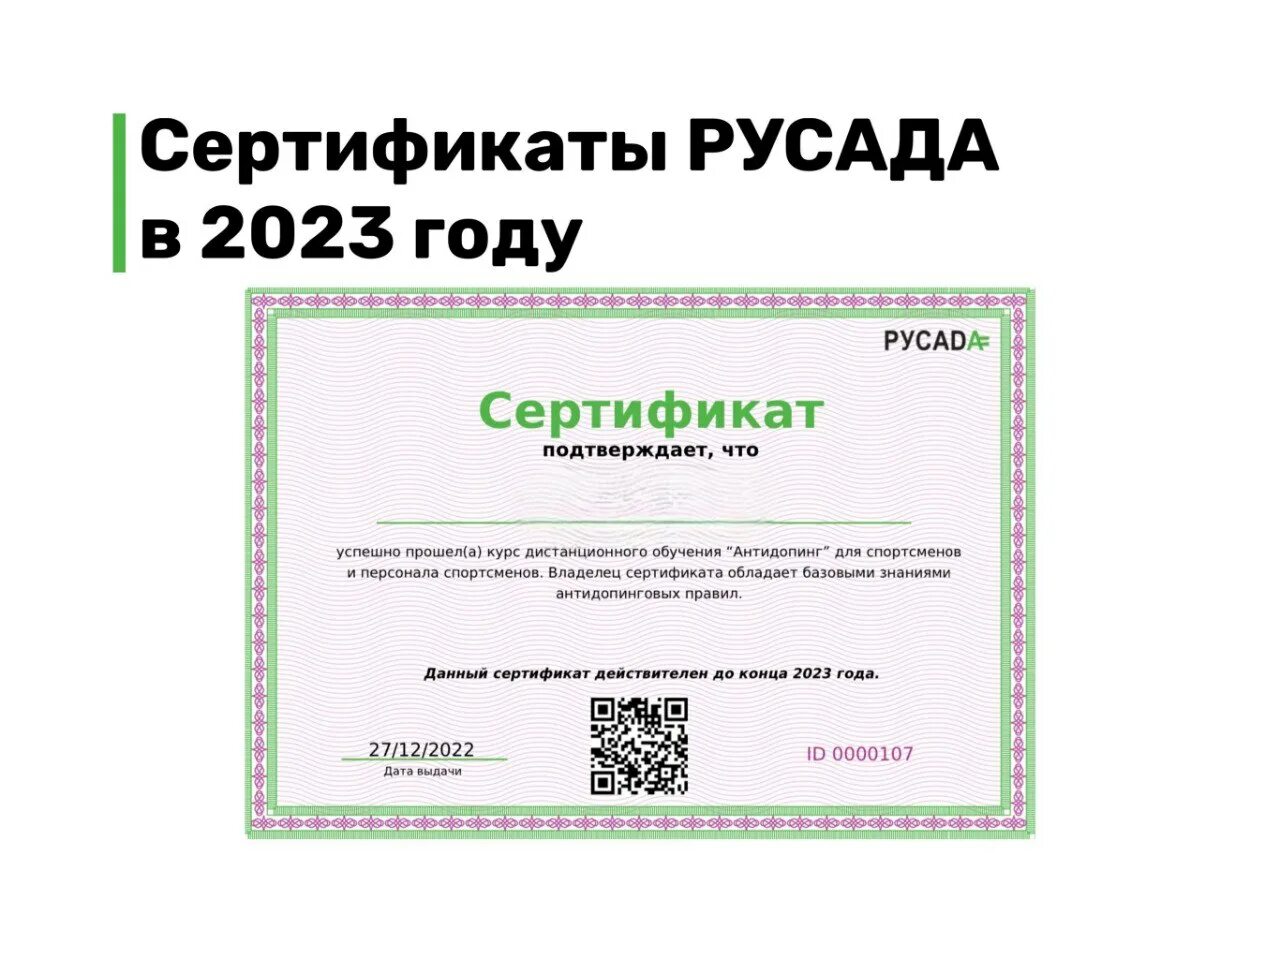 Русада спортсмену пройти тест. Сертификат РУСАДА 2023. Сертификат РУСАДА антидопинг 2023. Сертификаты 2023 года. Сертификат РУСАДА антидопинг.